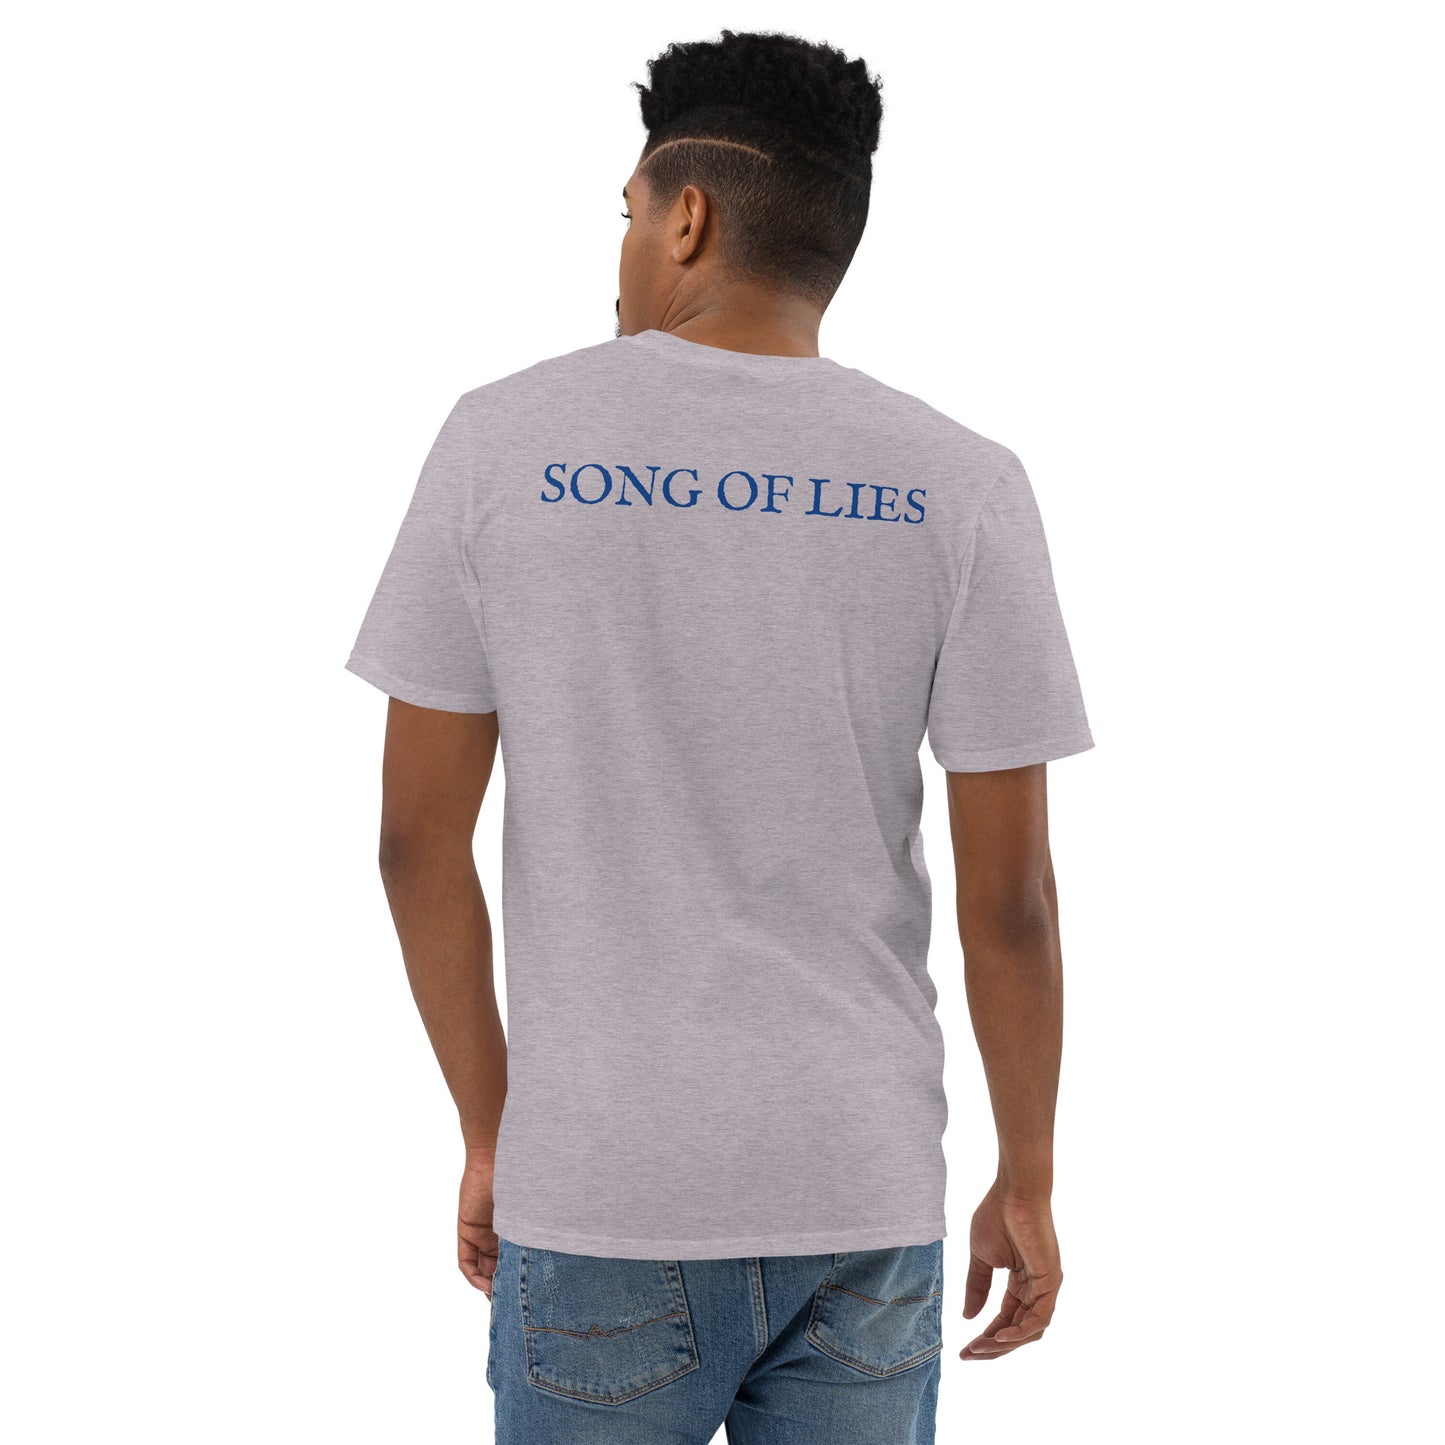 SONG OF LIES - Short-Sleeve T-Shirt